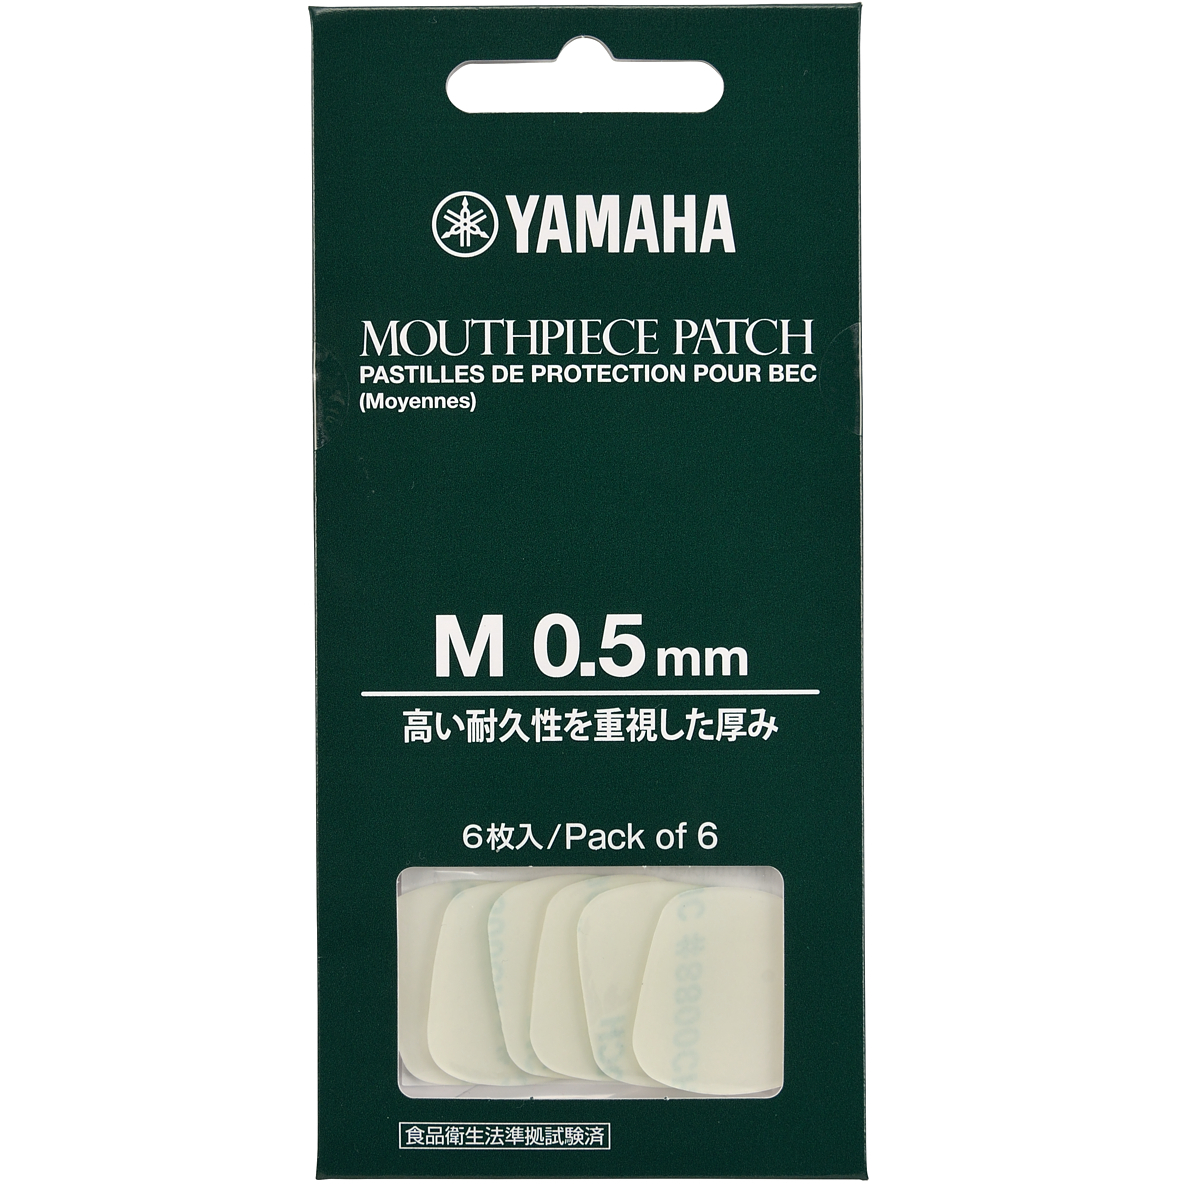 Yamaha Mouthpiece Patch - Medium - 0.5 mm